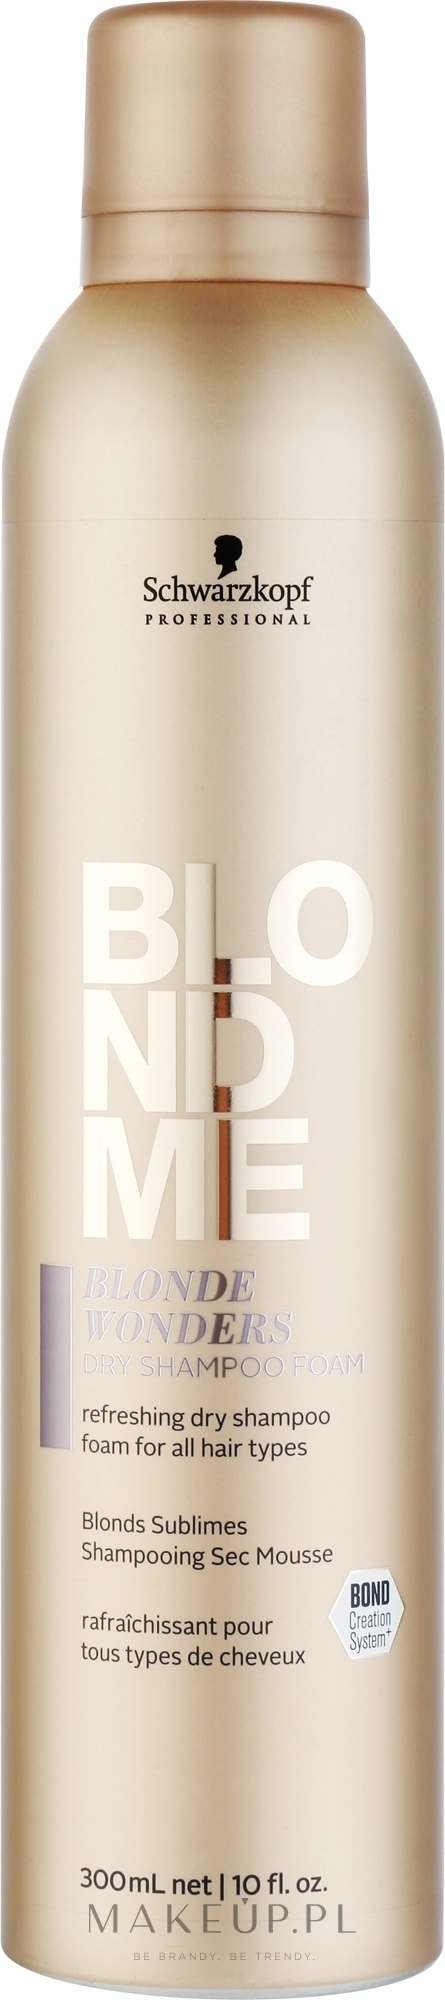 Suchy szampon do włosów blond - Schwarzkopf Professional Blondme Blonde Wonders Dry Shampoo Foam — Zdjęcie 300 ml